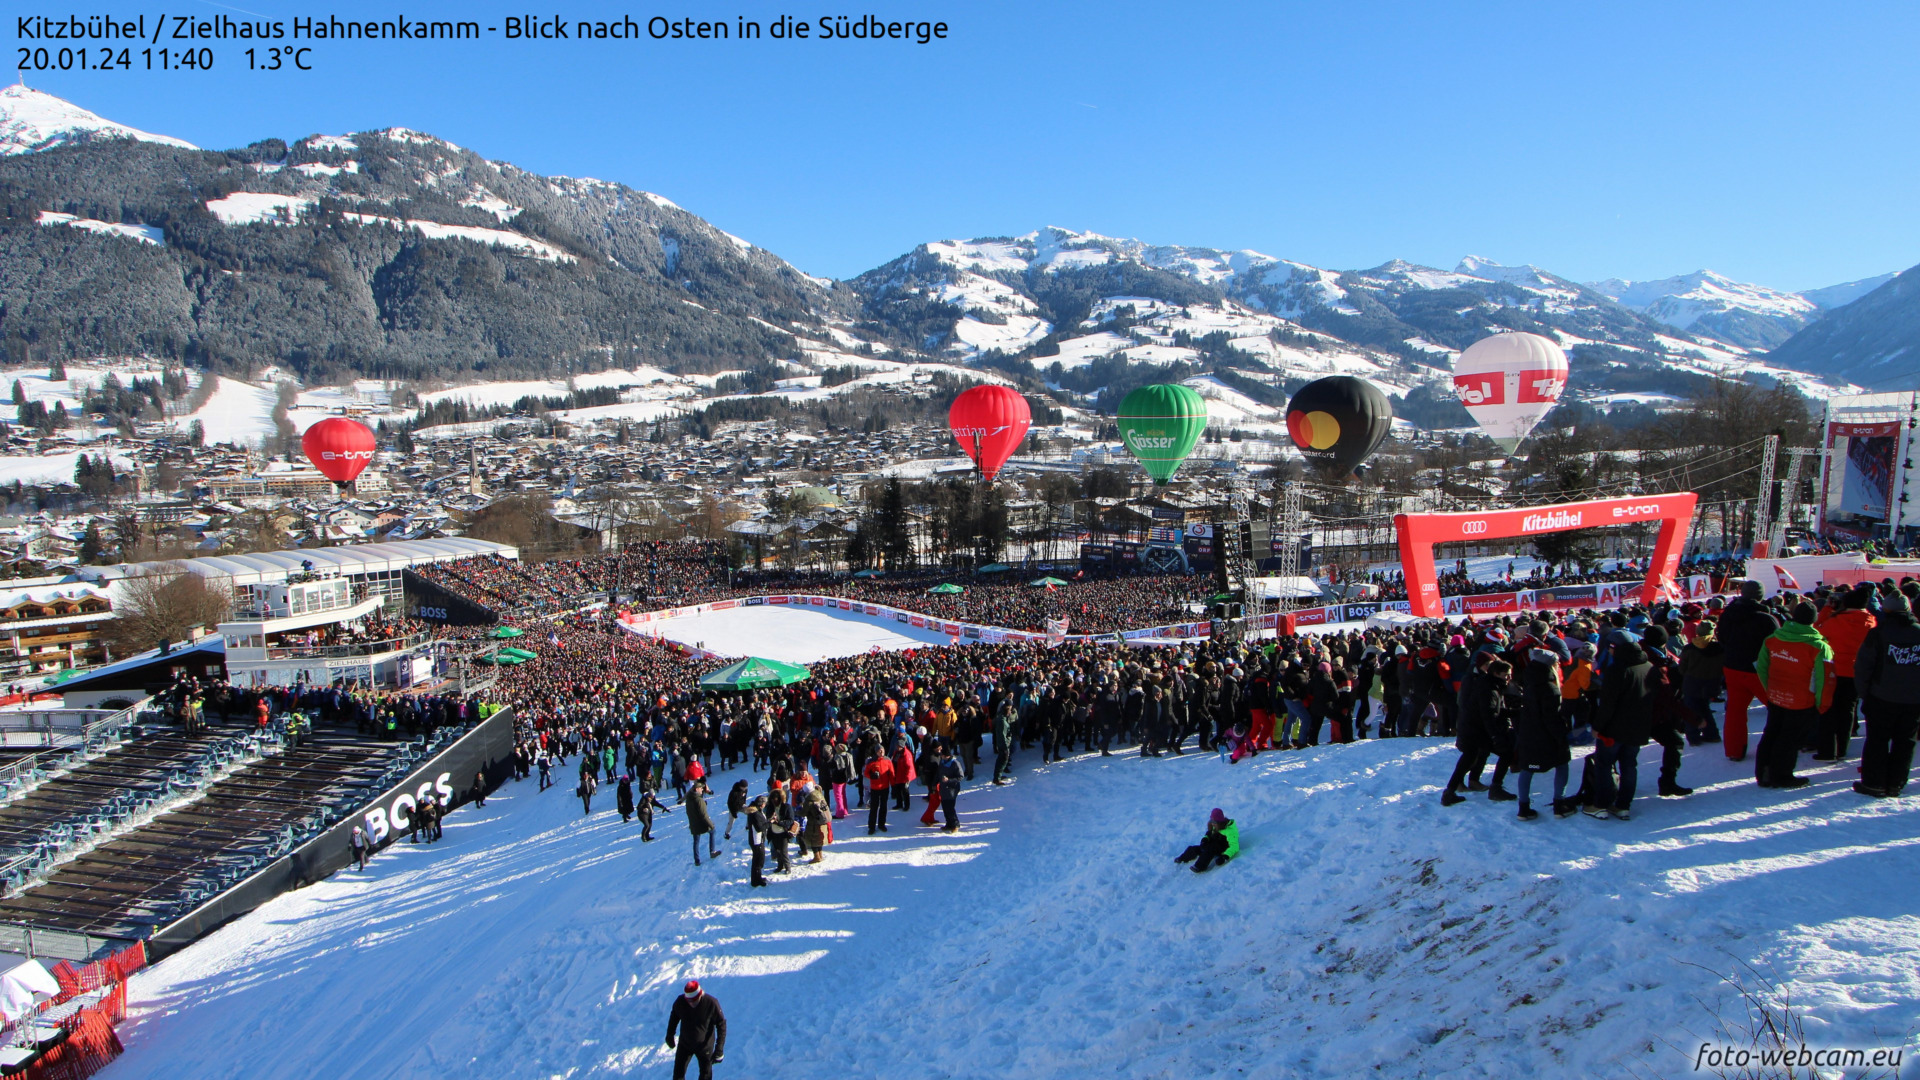 Alpen: ijskoud en zonnig weekend, komende week stormachtig